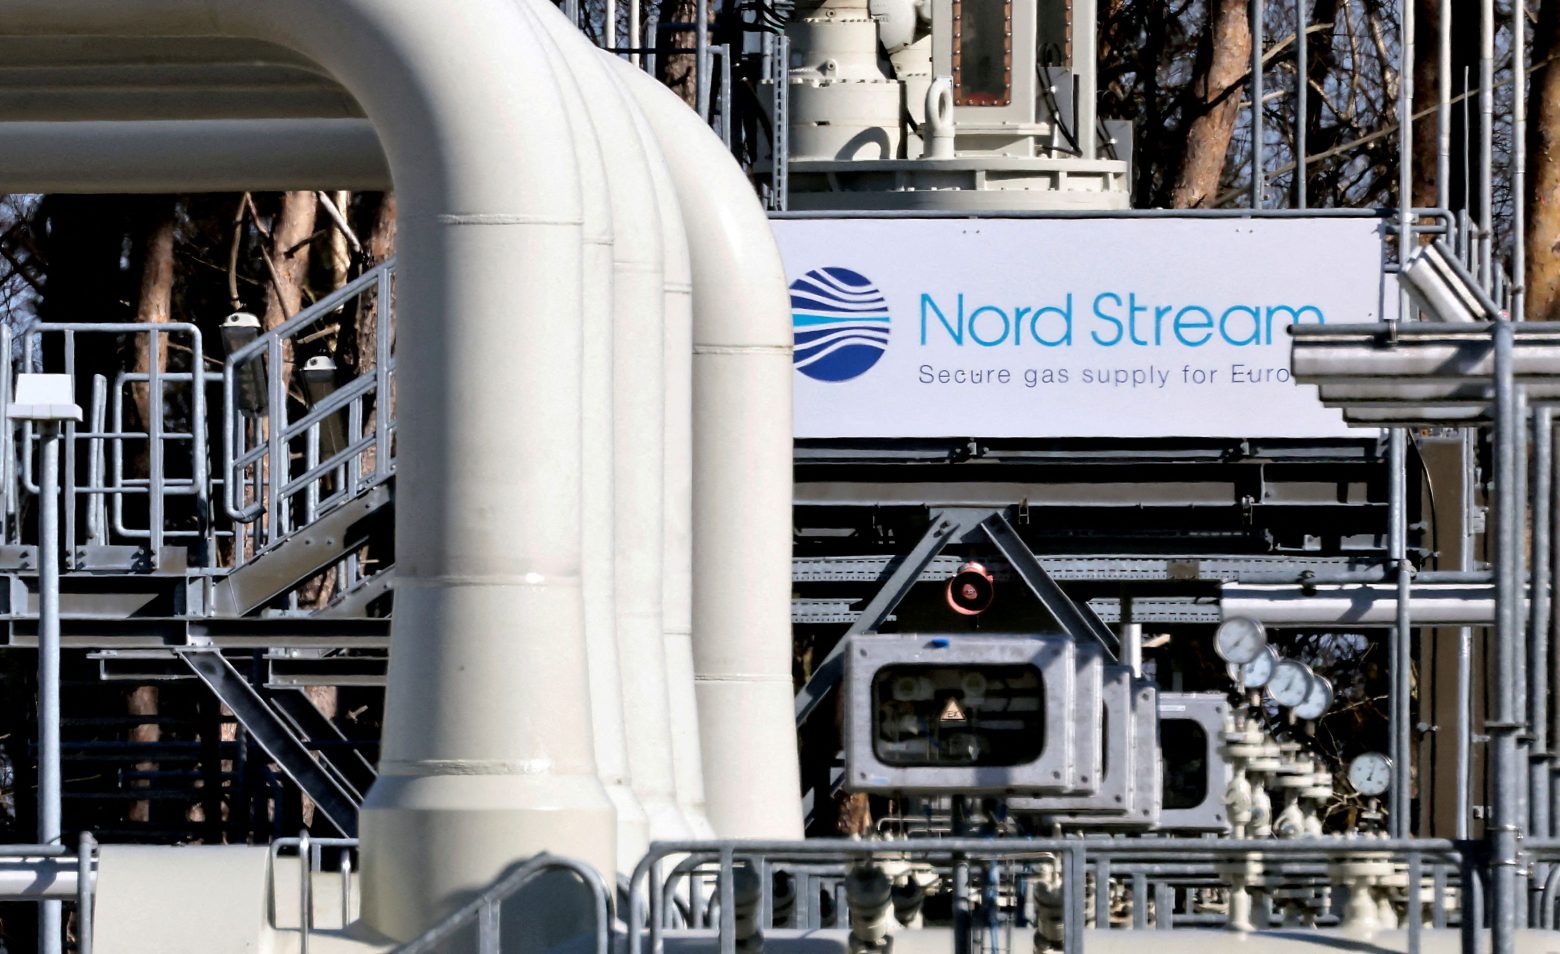 Άνοιξε ο αγωγός Nord Stream 1 - Στο 30% η ροή φυσικού αερίου